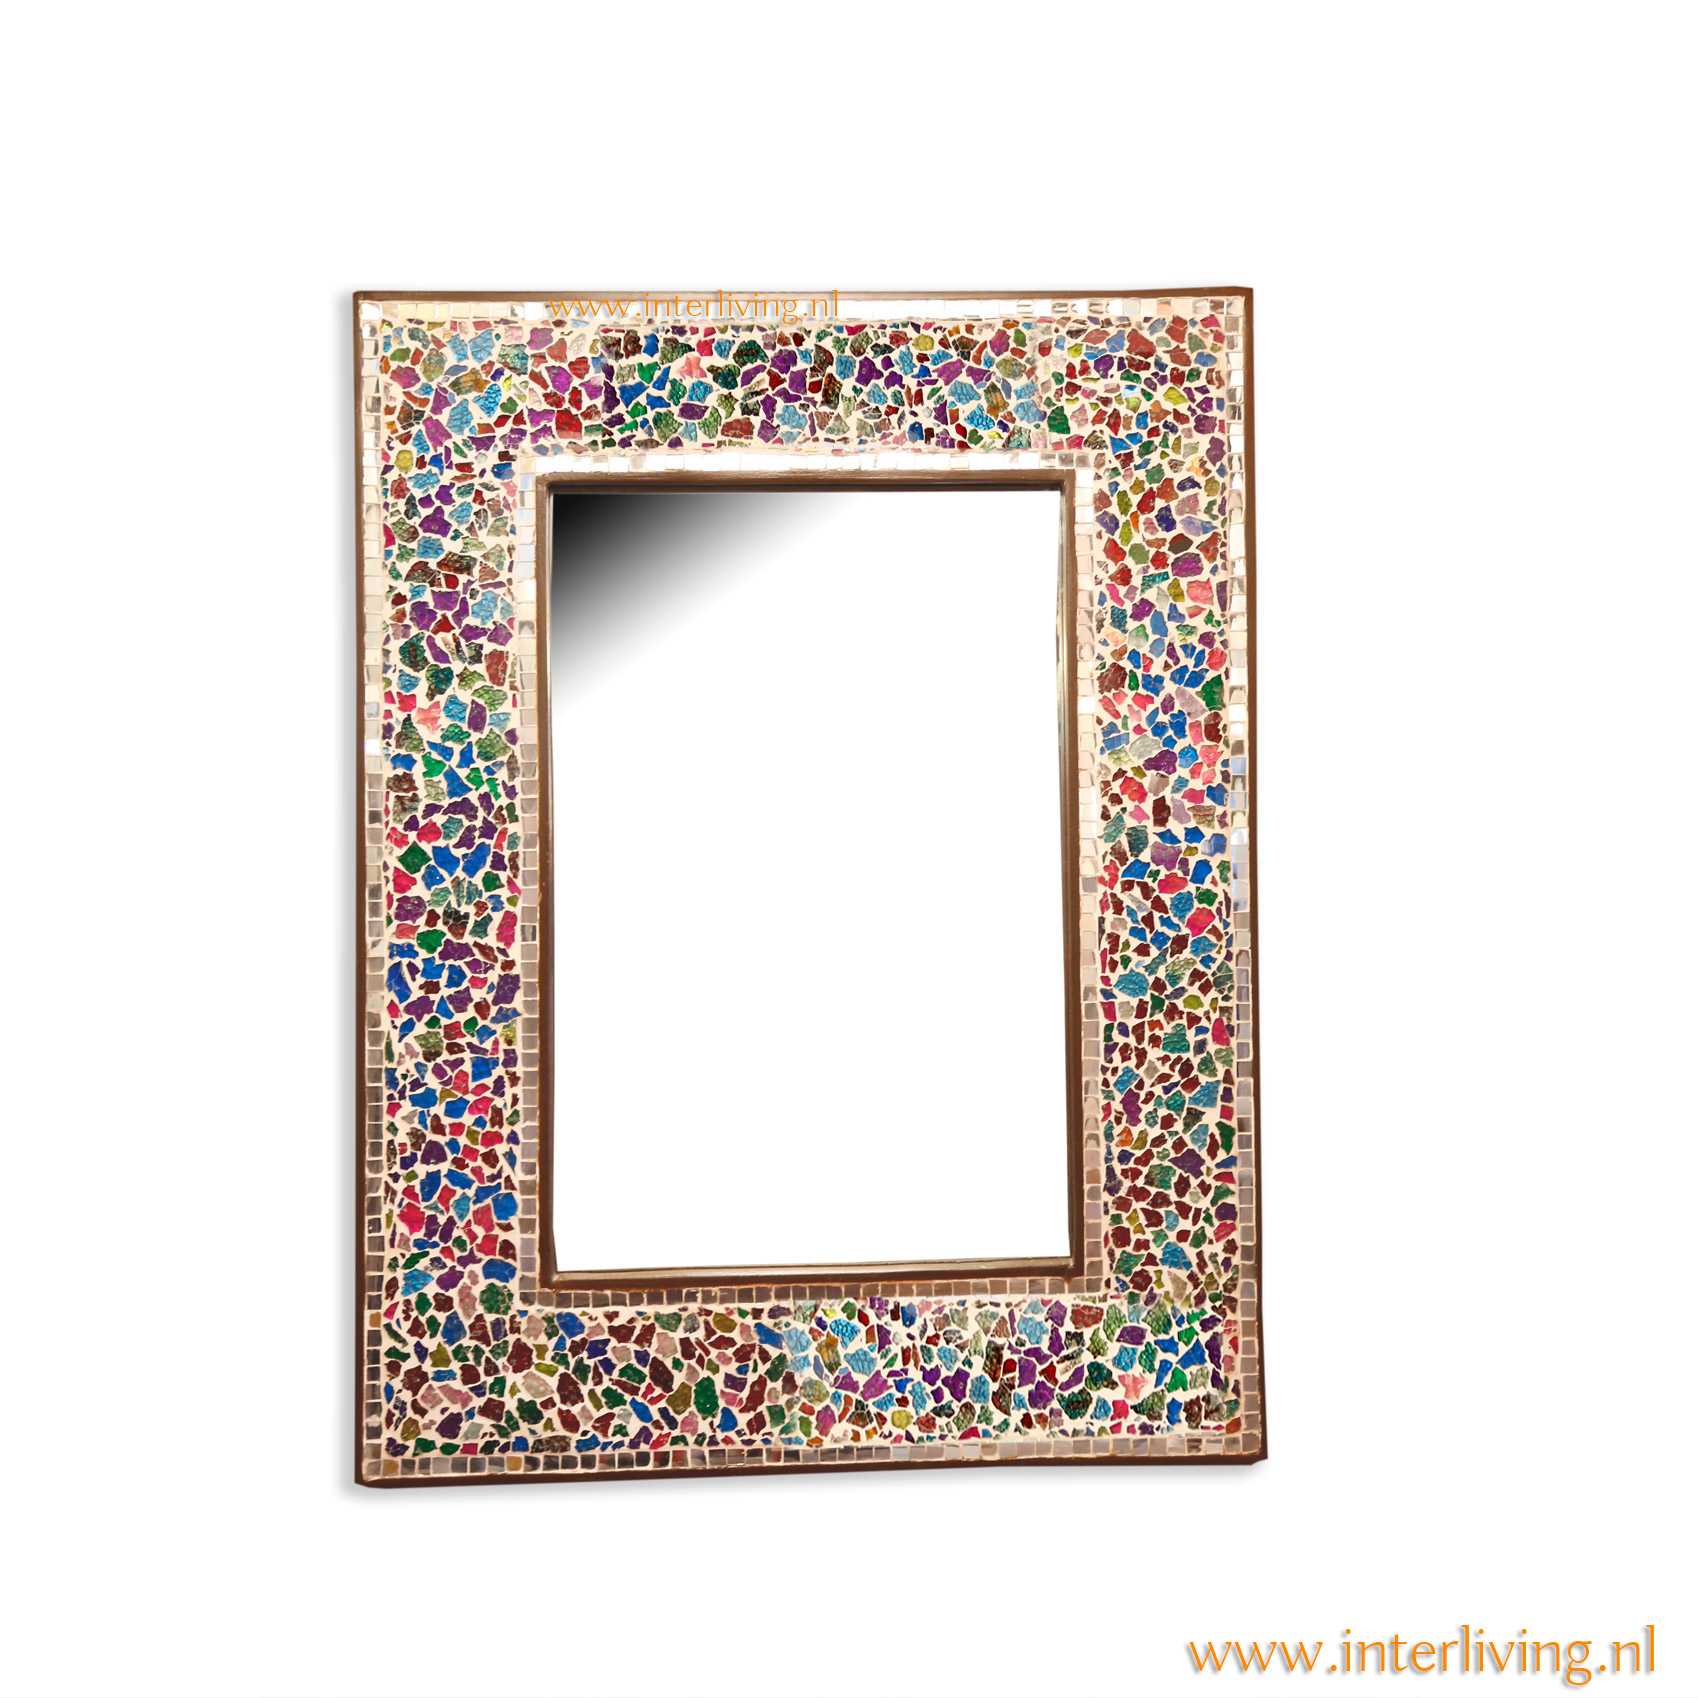 in beroep gaan Reductor vangst Bohemian spiegel met lijst van glinsterend "broken glass" glasmozaiek